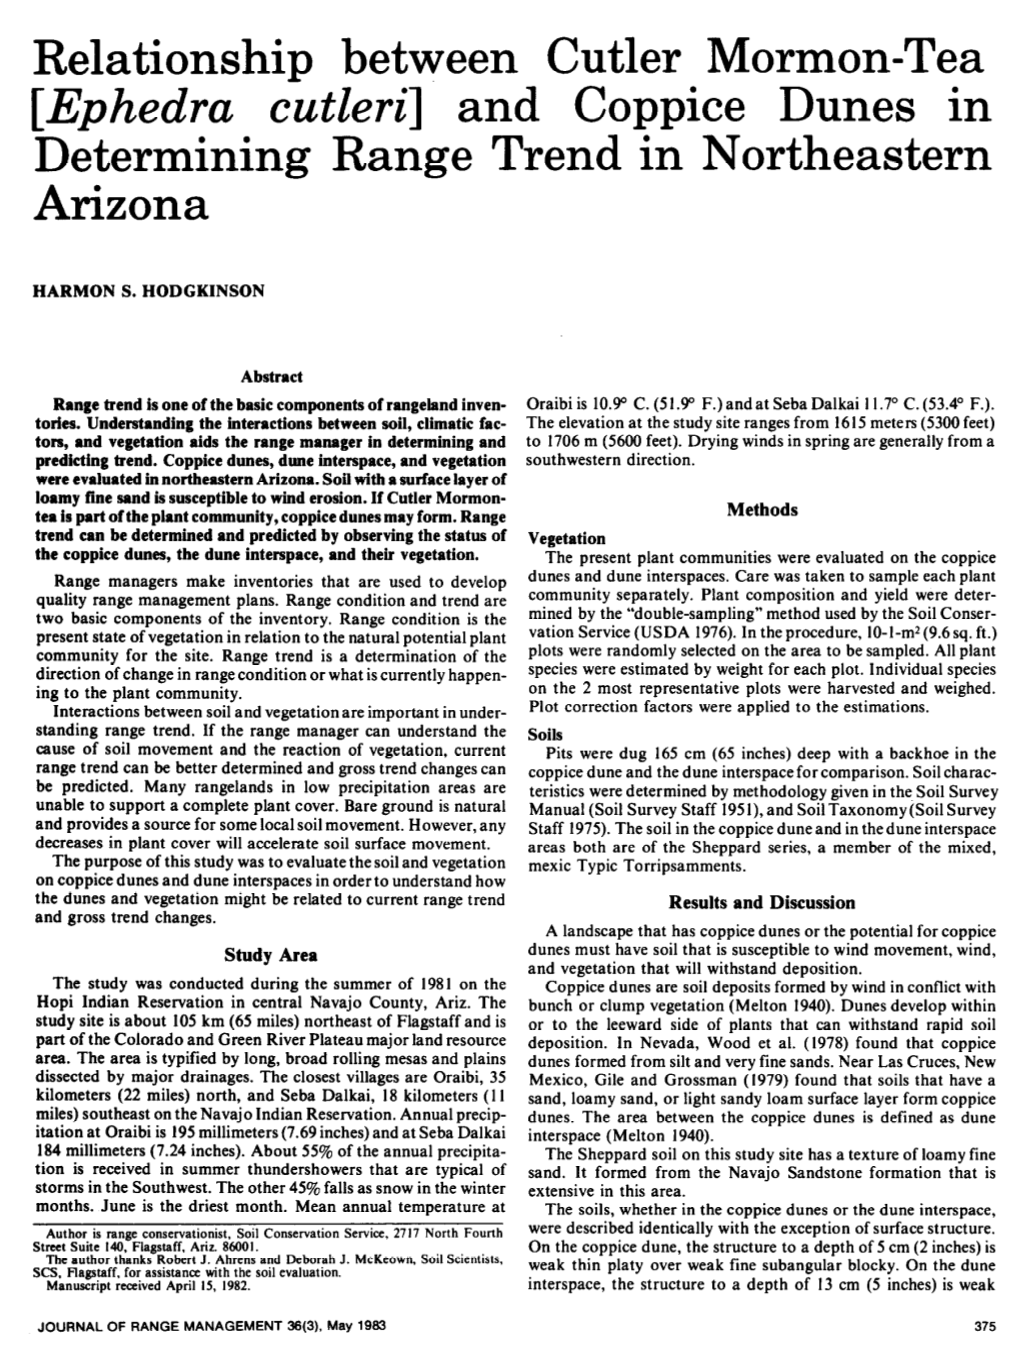 Relationship Between Cutler Mormon-Tea [Ephedra C&Eri] and Coppice Dunes in Determining Range Trend in Northeastern Arizona